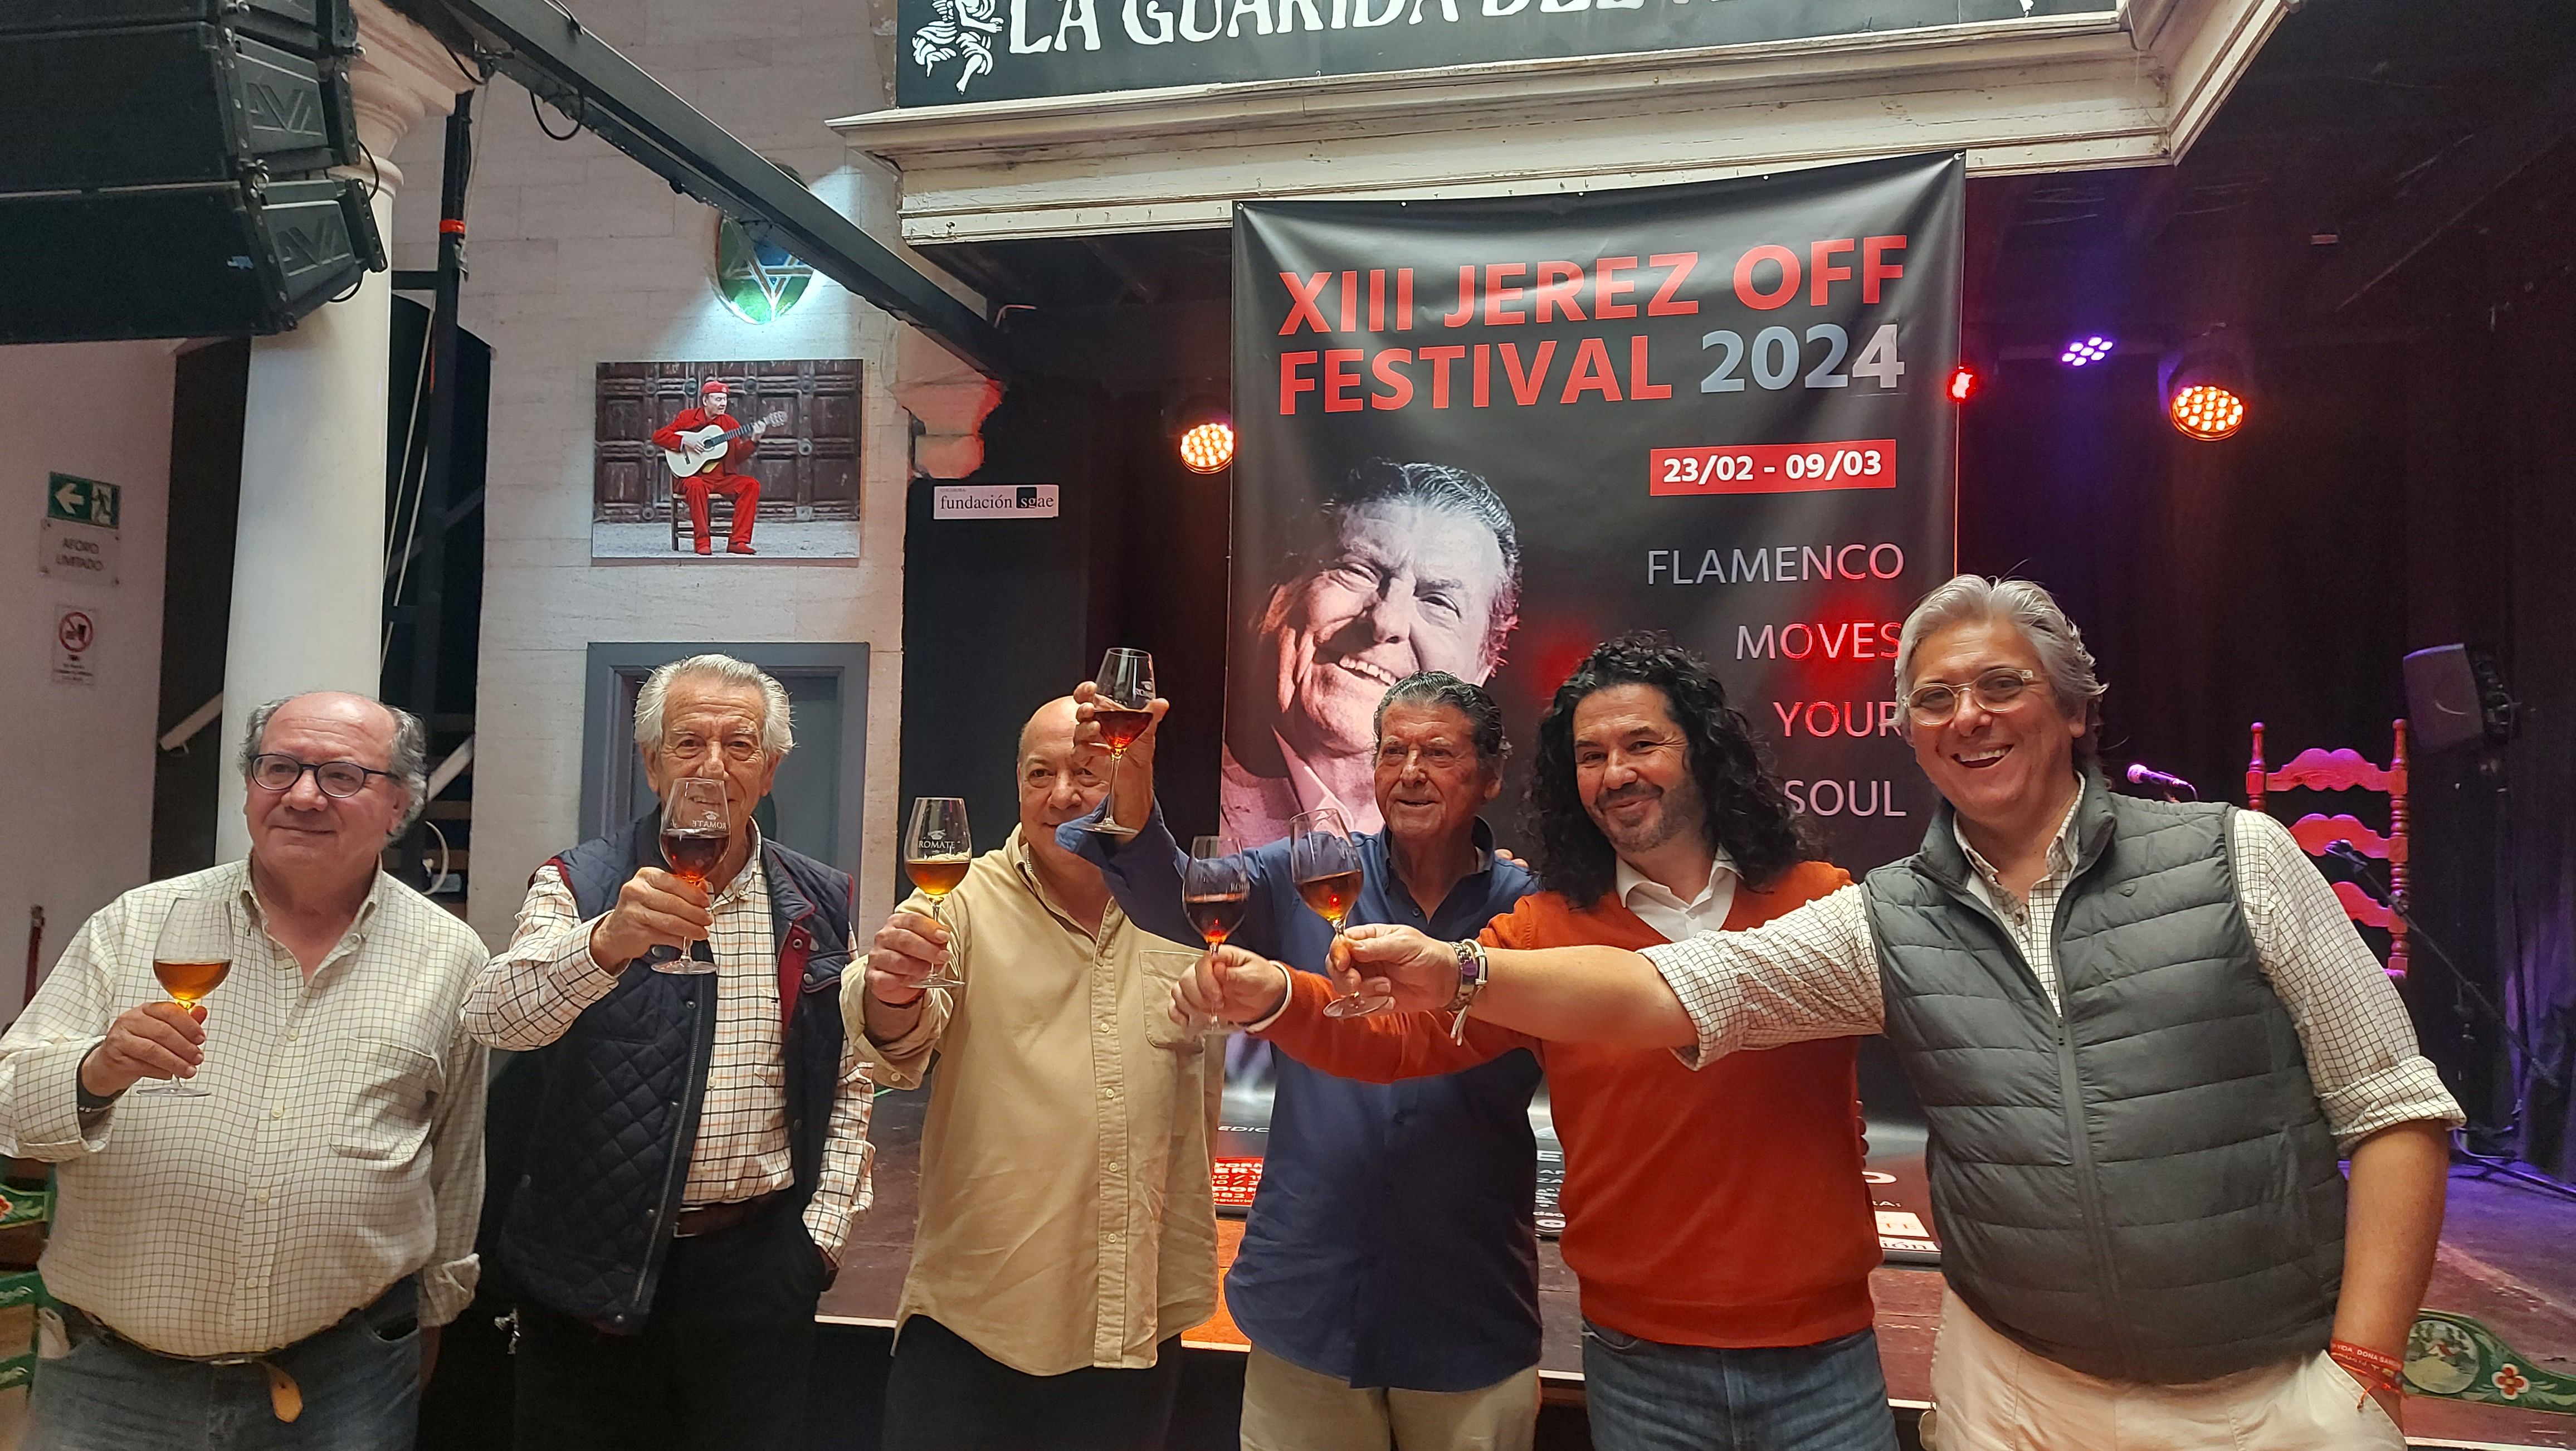 El XIII OFF Festival de Jerez pondrán en escena 60 espectáculos en honor a Luis El Zambo en 2024